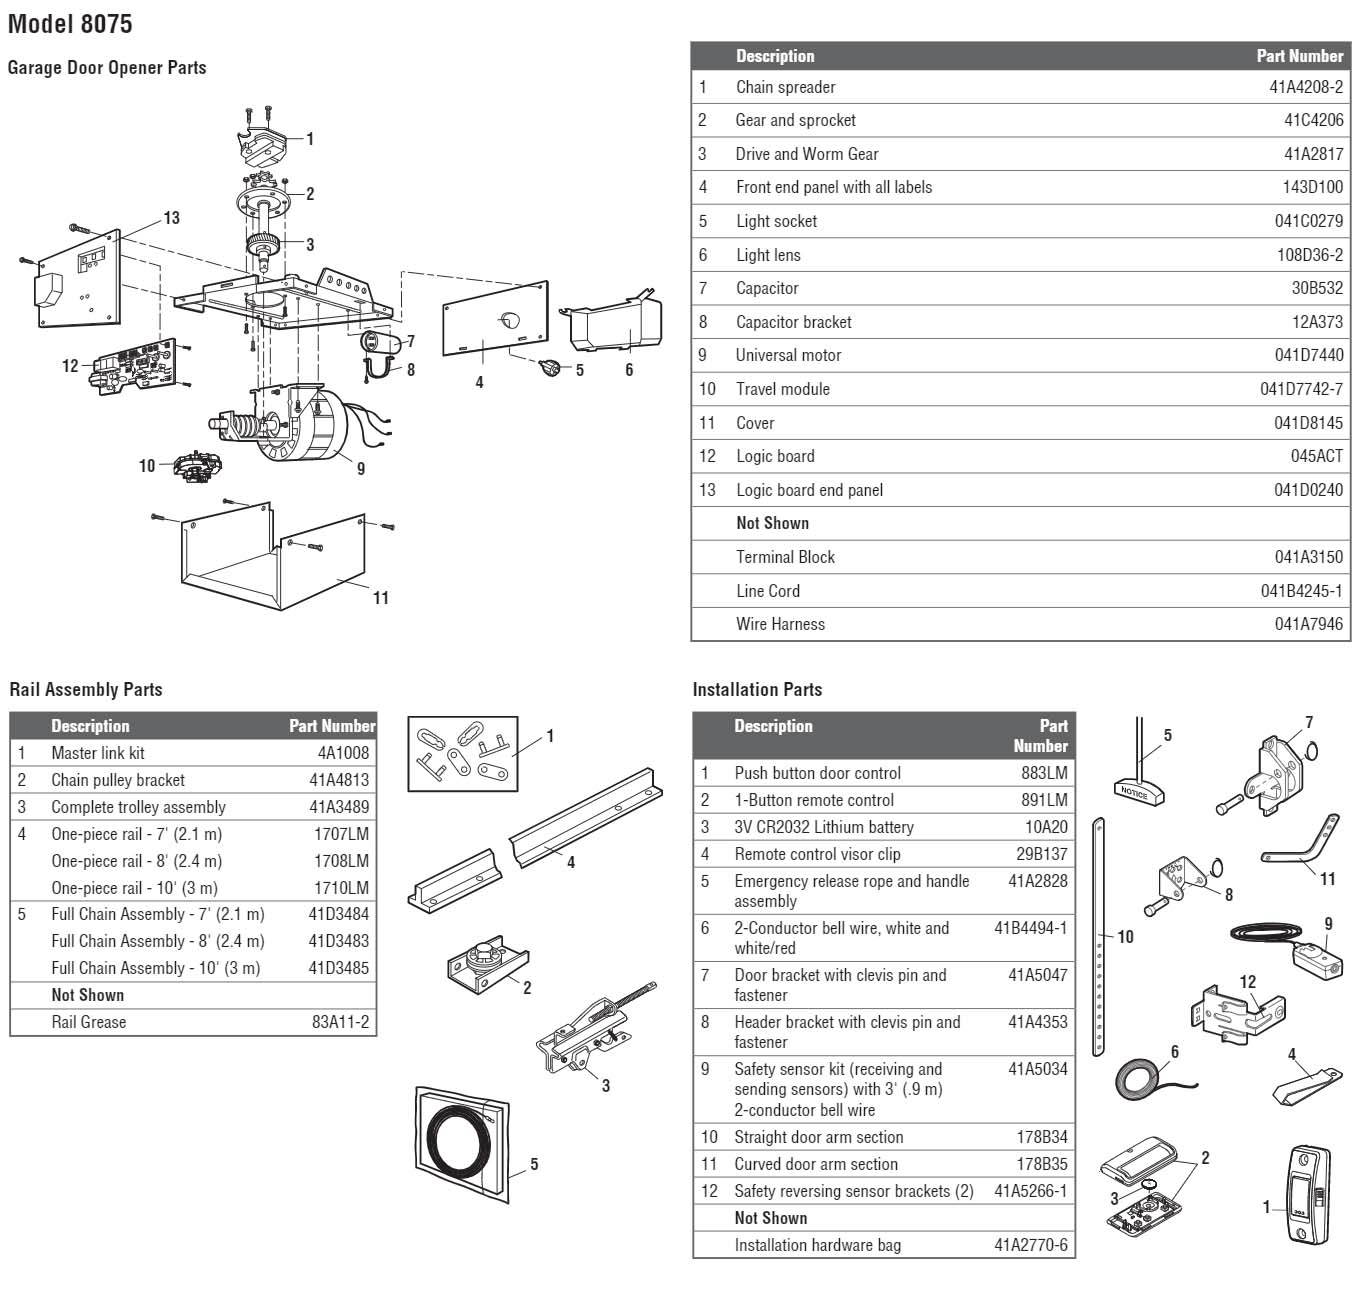 LiftMaster 8075 Garage Door Opener Parts Diagram and List